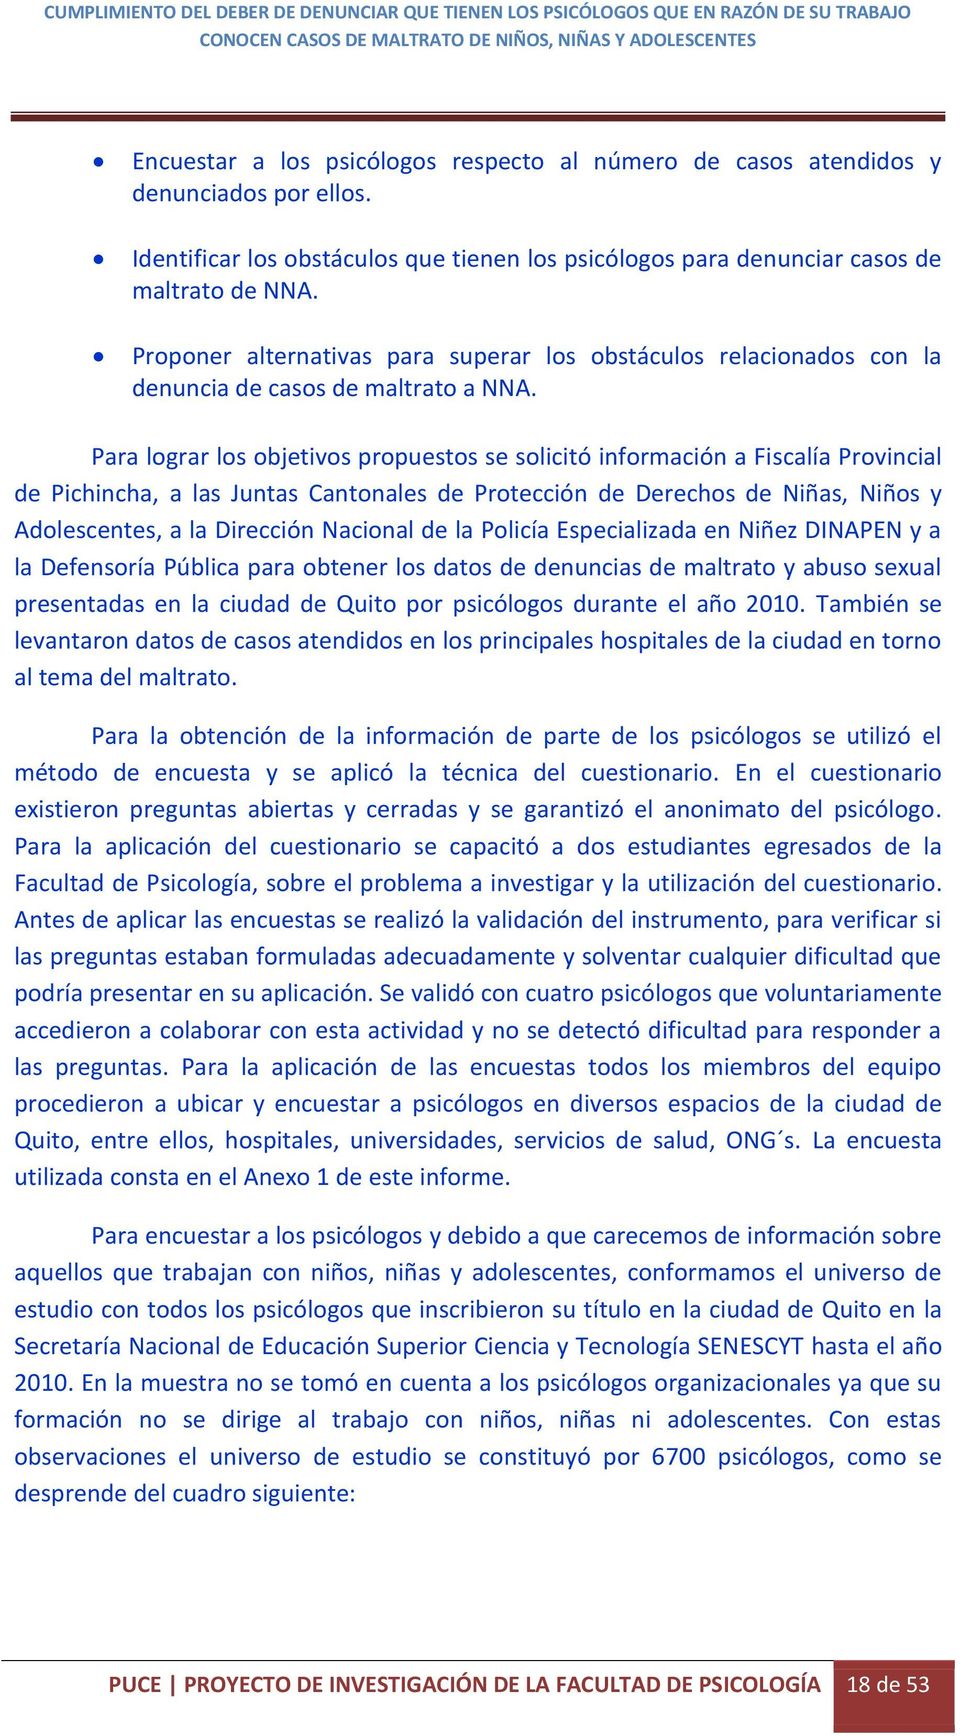 Para lograr los objetivos propuestos se solicitó información a Fiscalía Provincial de Pichincha, a las Juntas Cantonales de Protección de Derechos de Niñas, Niños y Adolescentes, a la Dirección